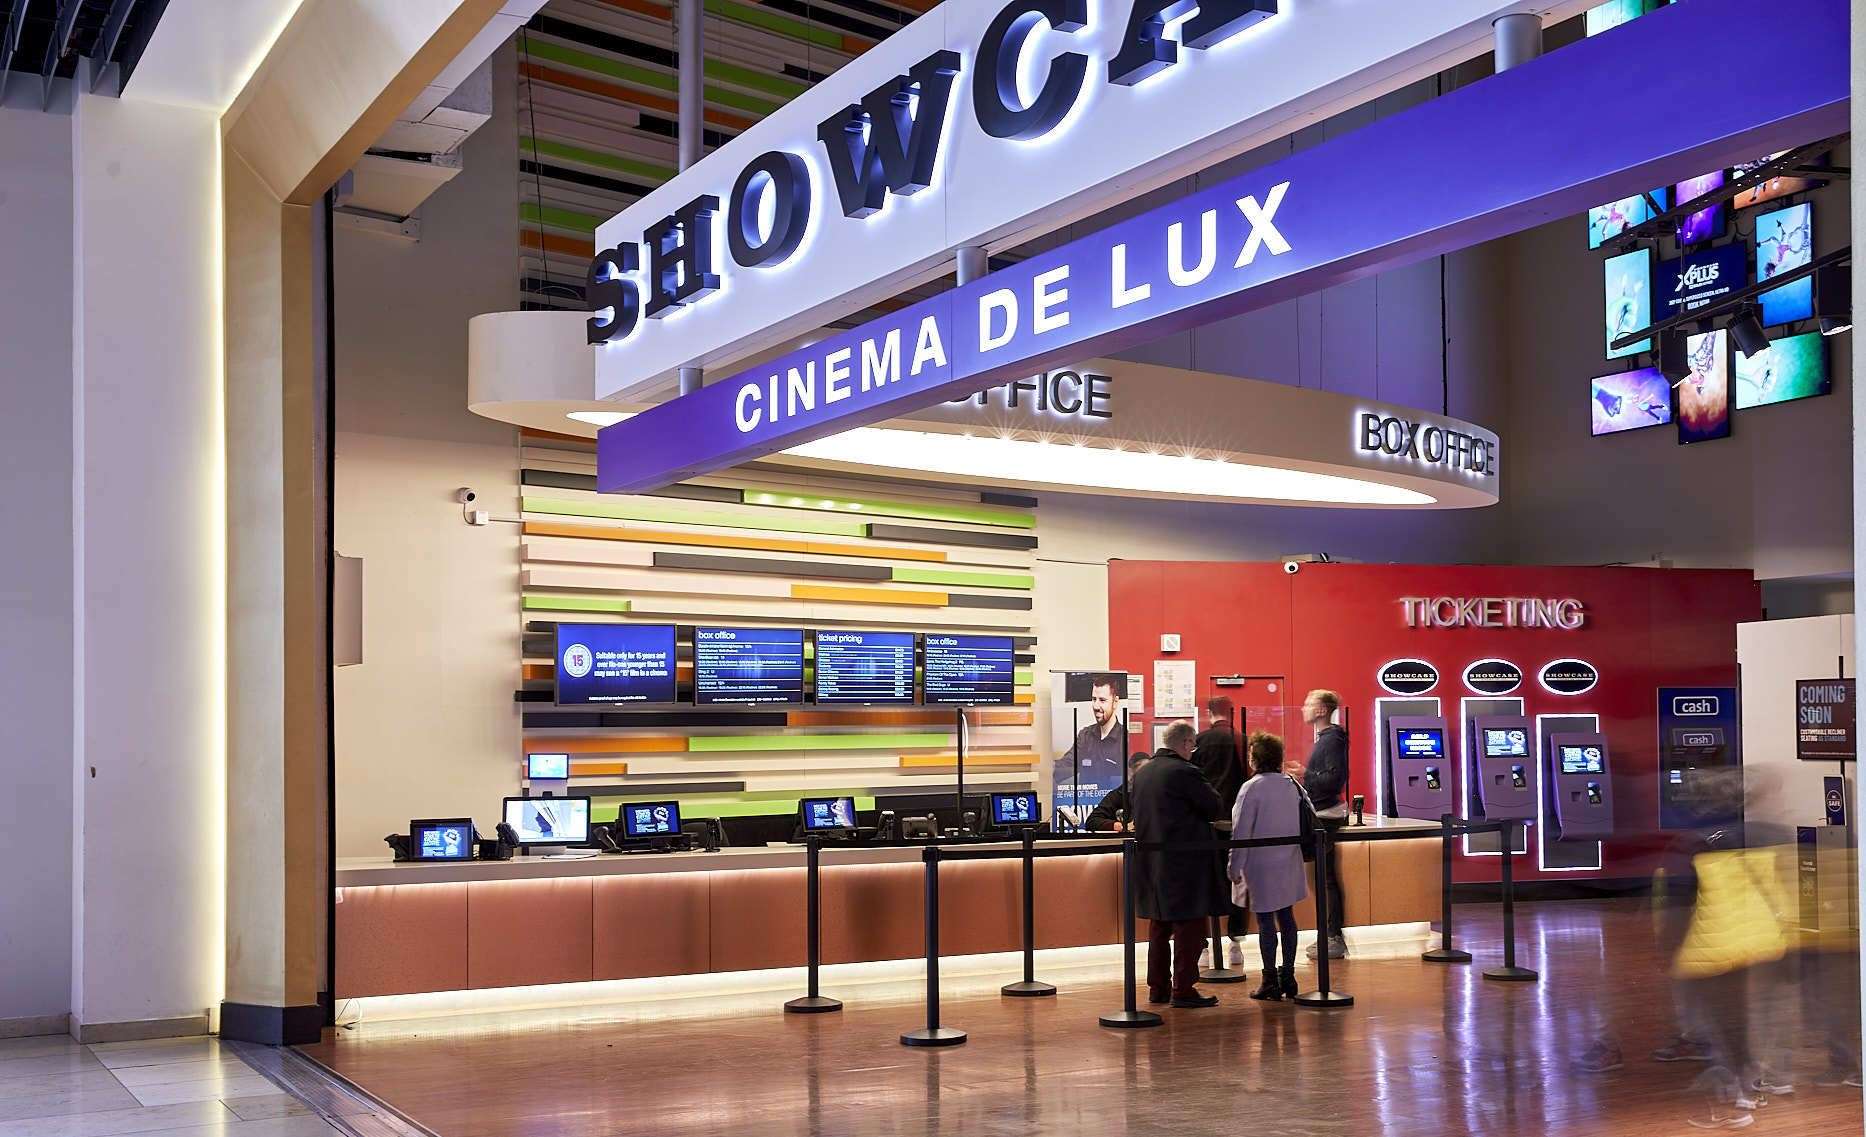 Showcase Cinema de Lux Bluewater underwent a luxury refurbishment earlier this year. Picture: Showcase Cinemas